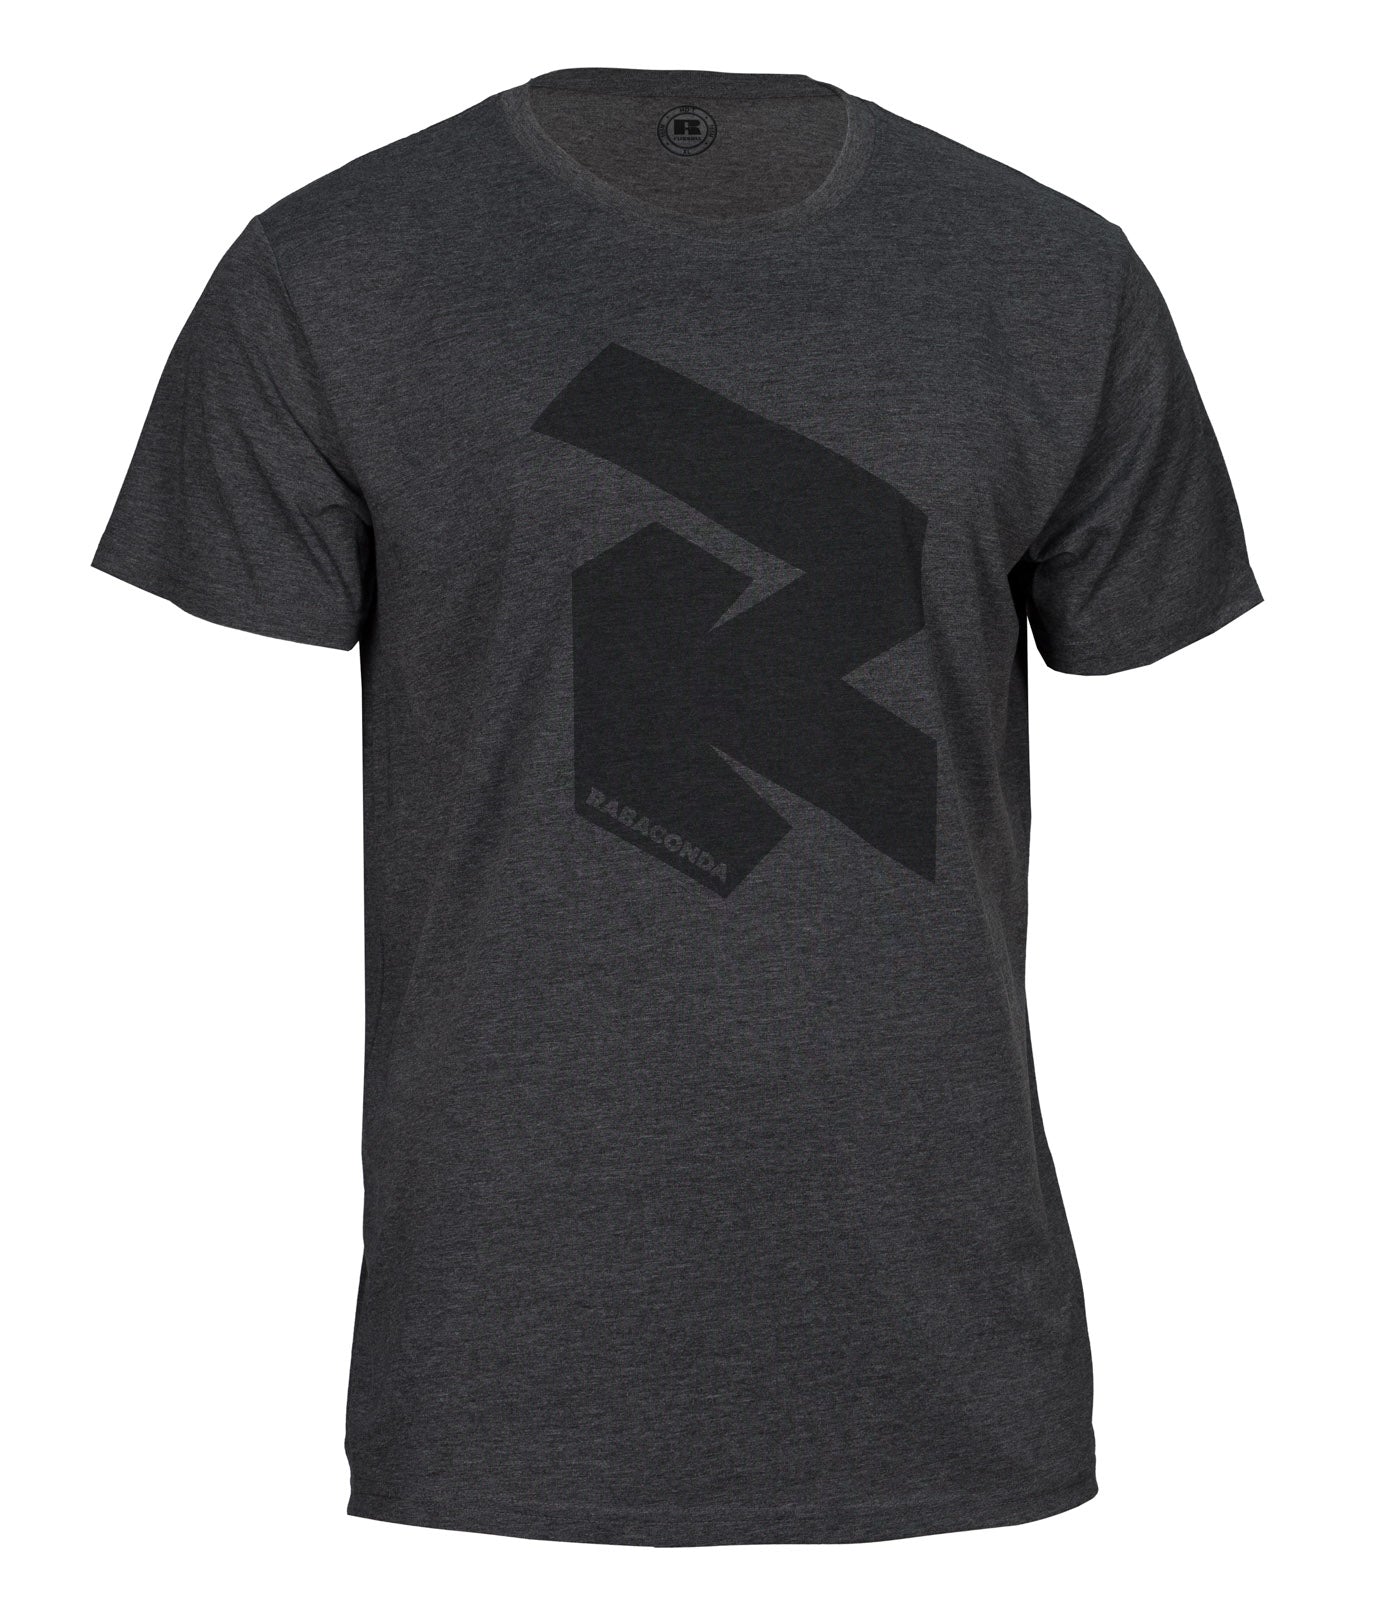 RabacondaRipperT-shirt-21.jpg